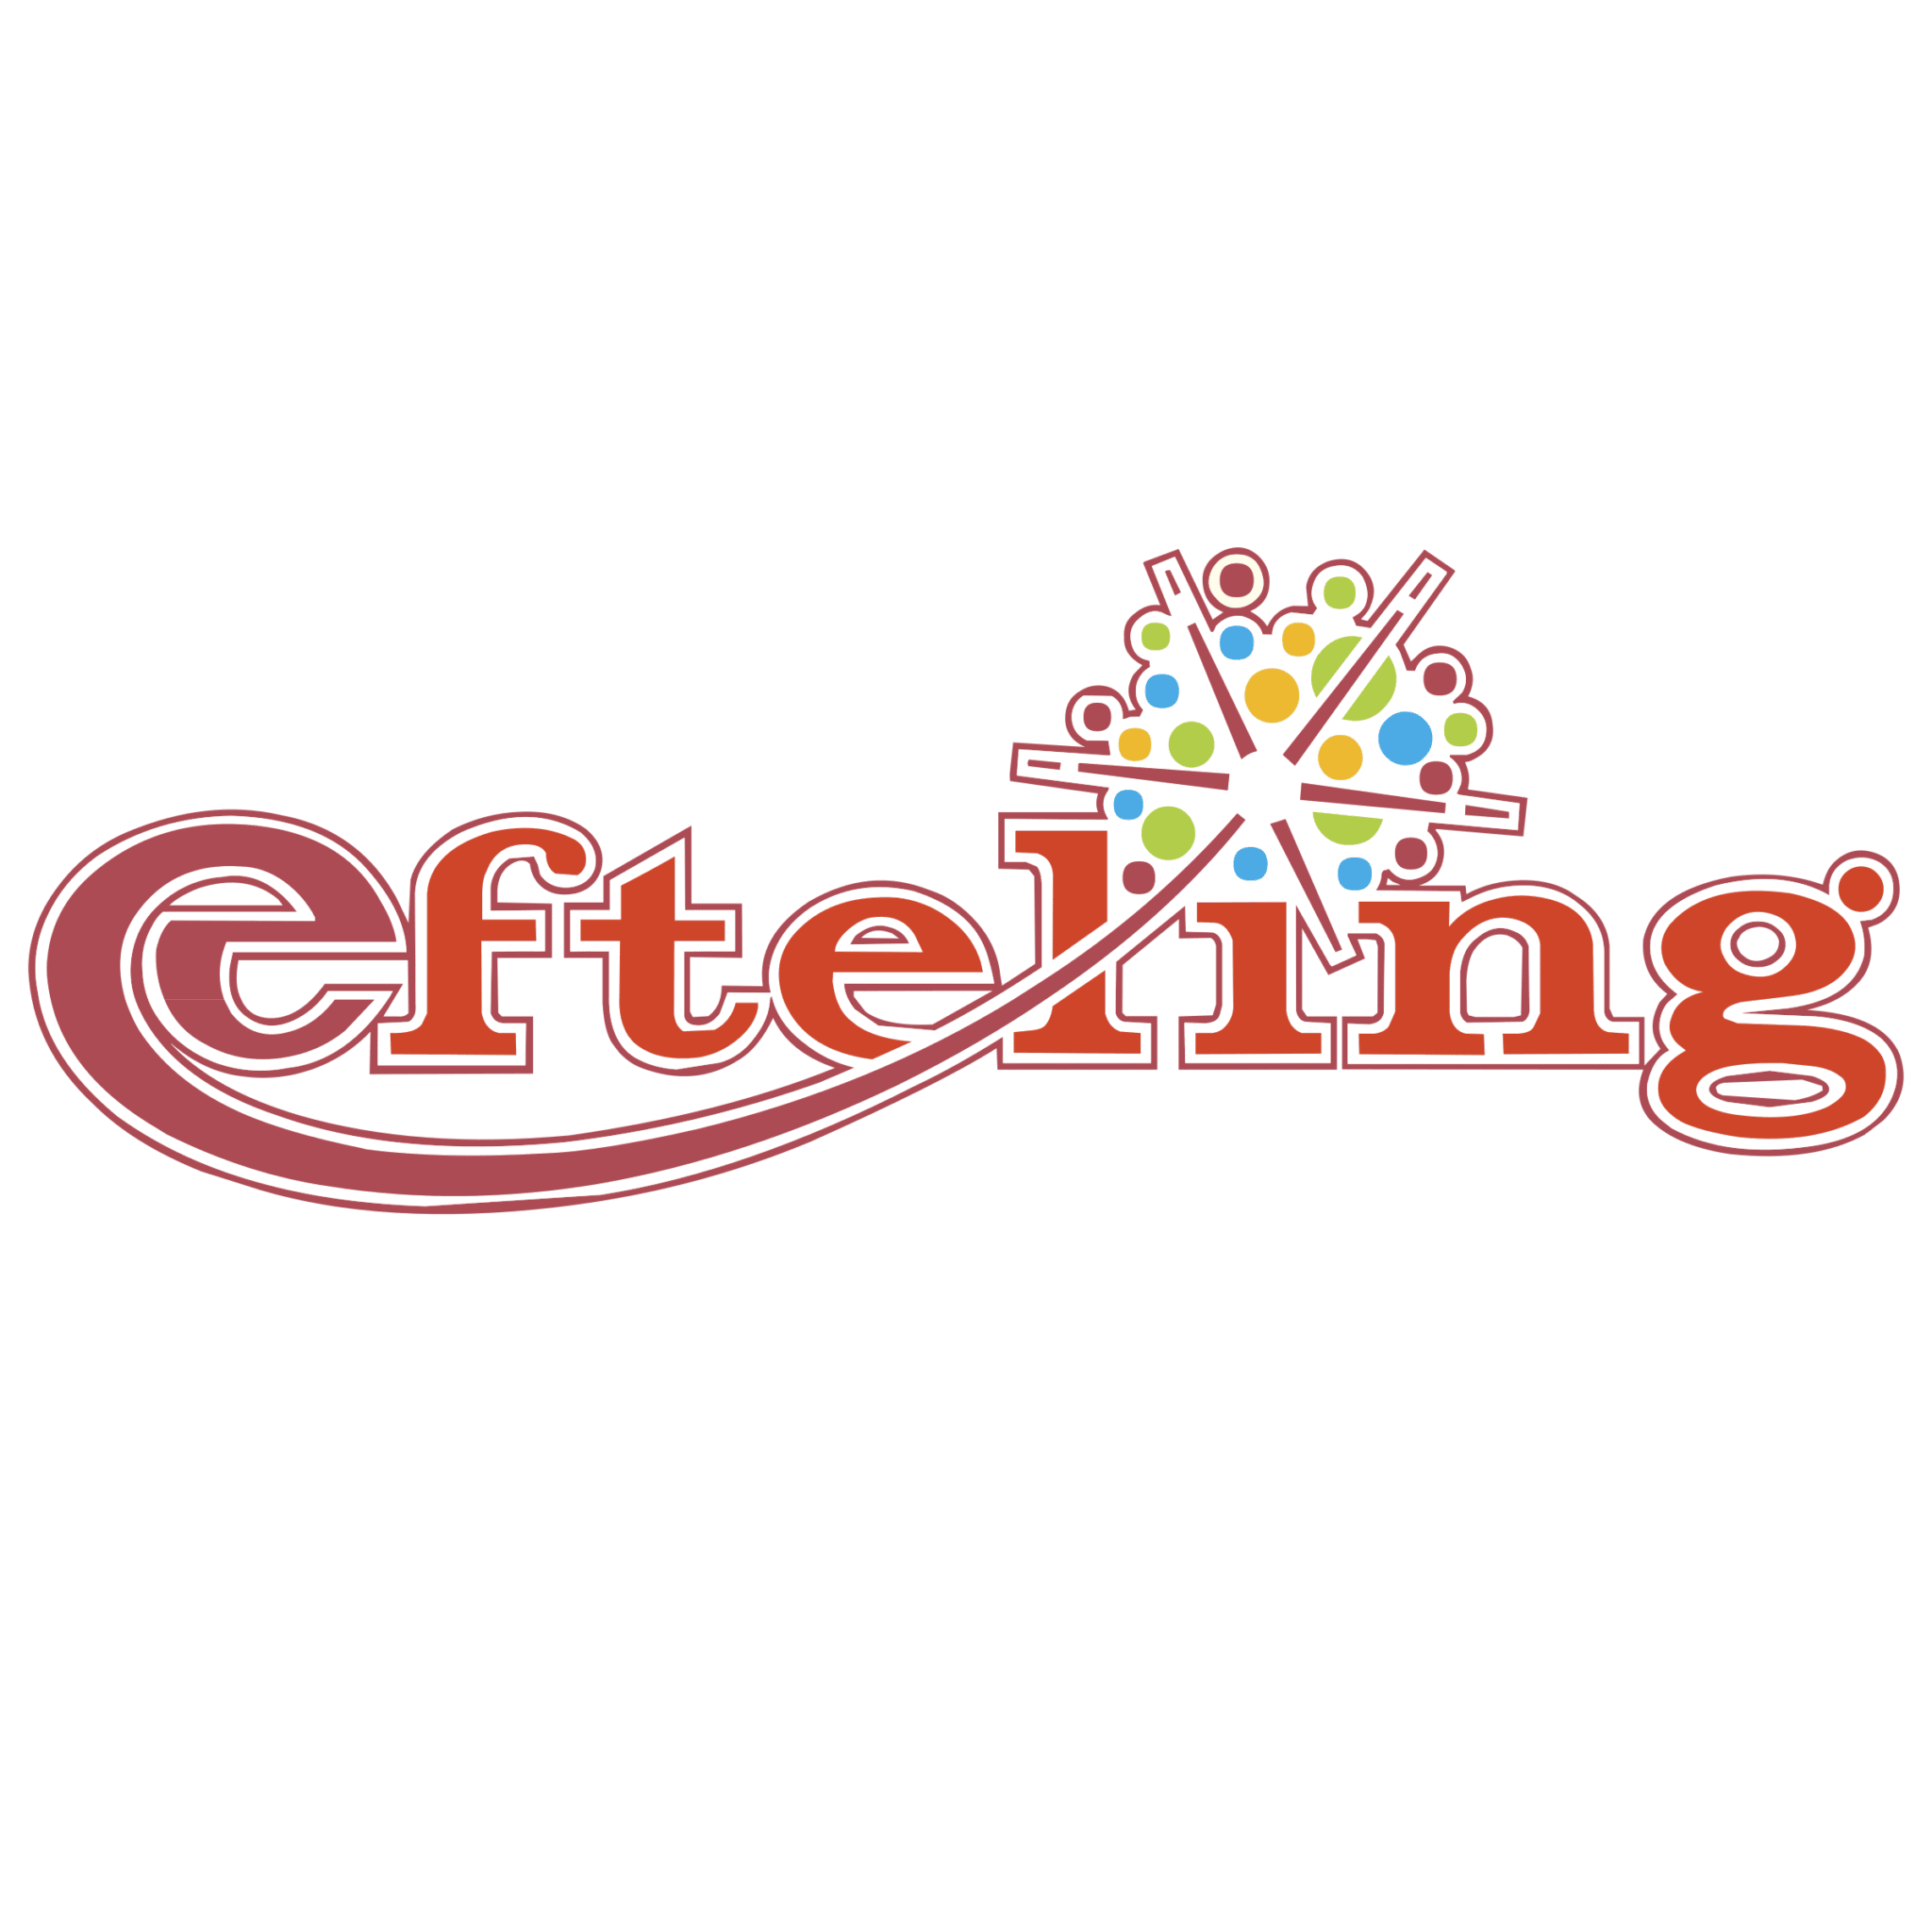 efteling-1-logo-png-transparent